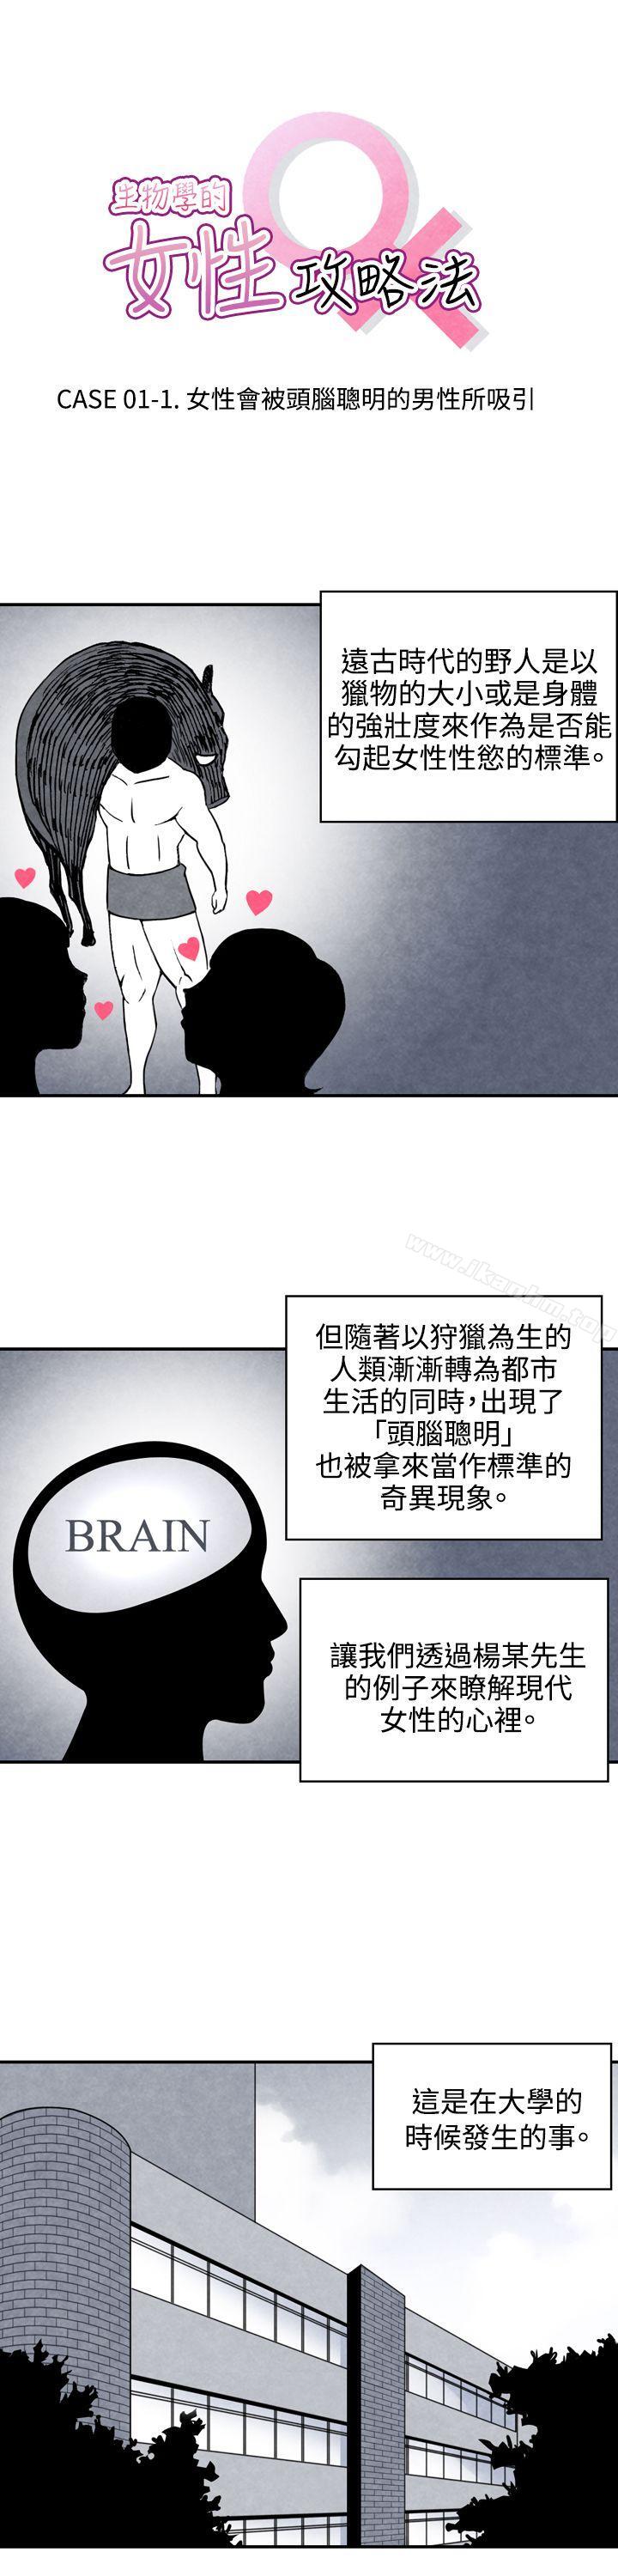 生物學的女性攻略法 在线观看 生物學的女性攻略法 CASE 01-1. 頭腦聰明的男性 漫画图片1